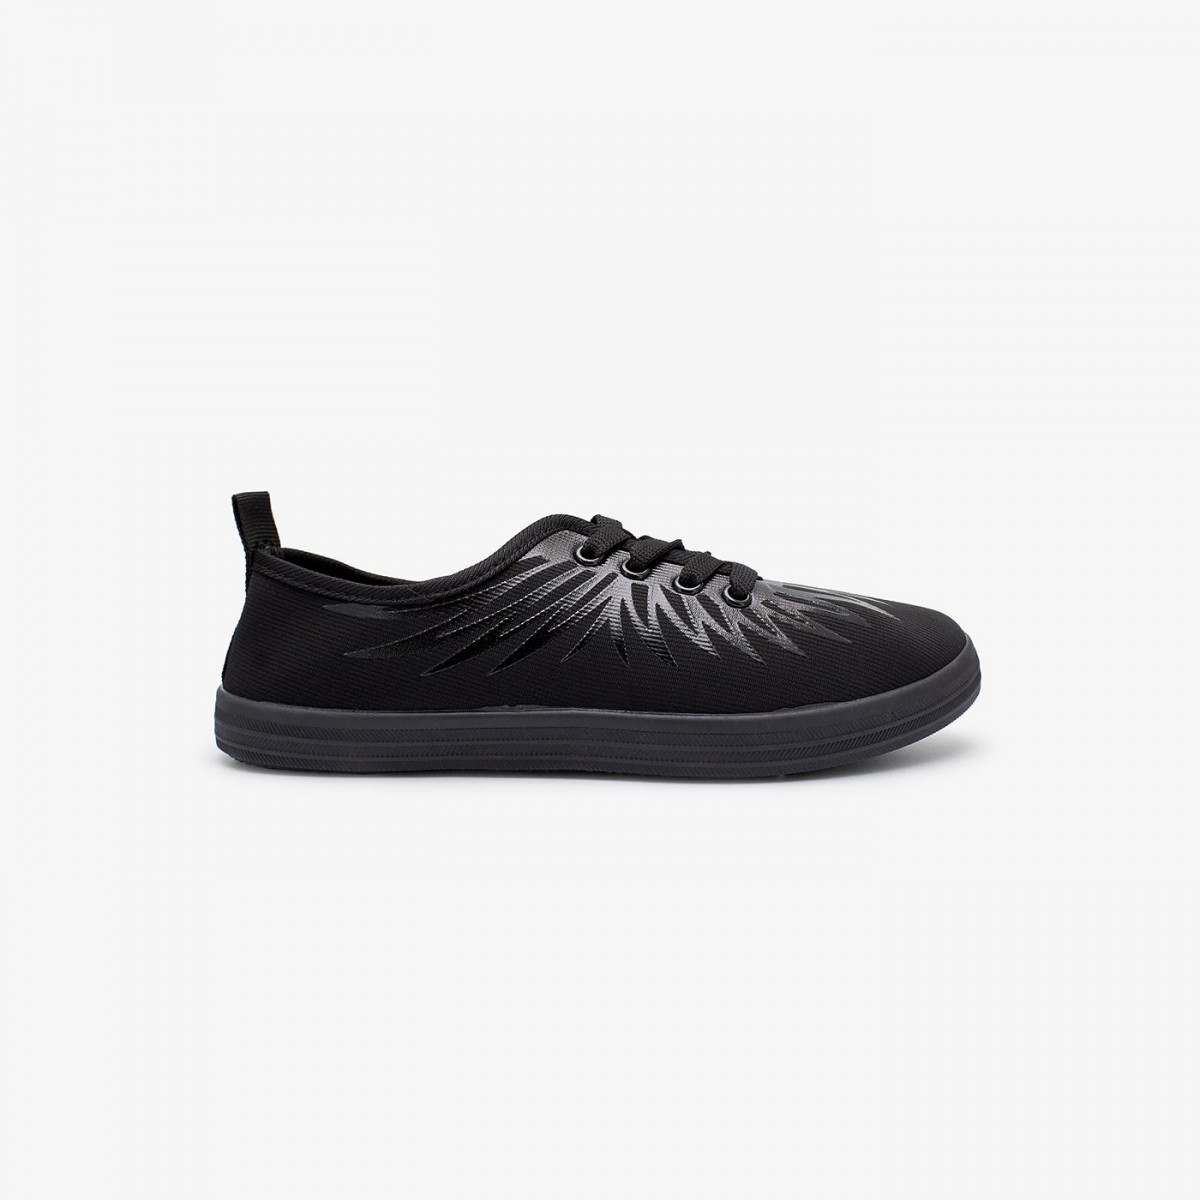 /2019/08/liza-womens-running-shoes-lz-zs-0007-black-image2.jpeg